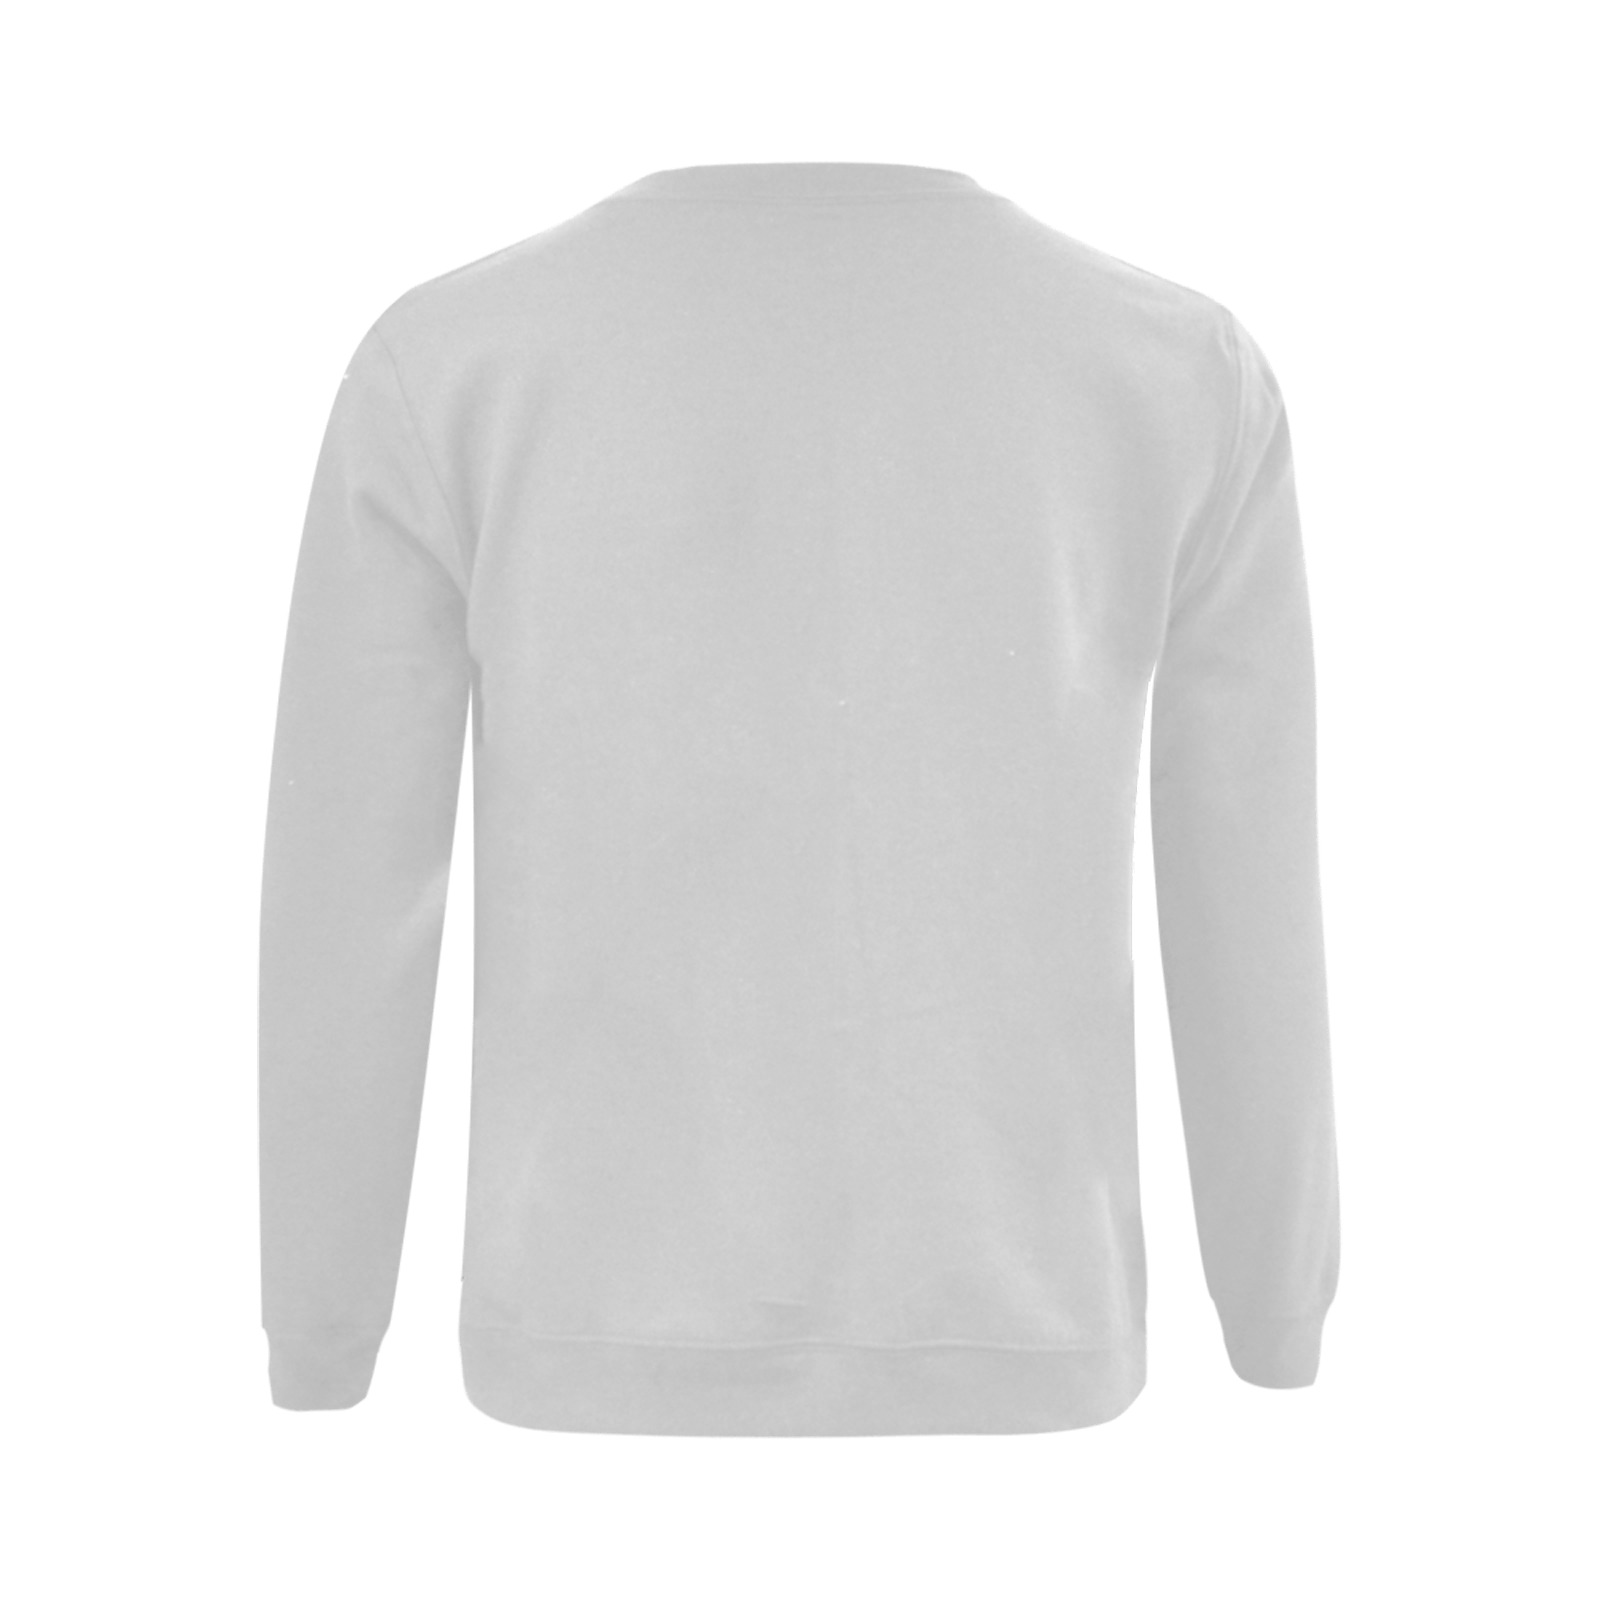 Not Old - Classic_01a_AA Gildan Crewneck Sweatshirt(NEW) (Model H01)